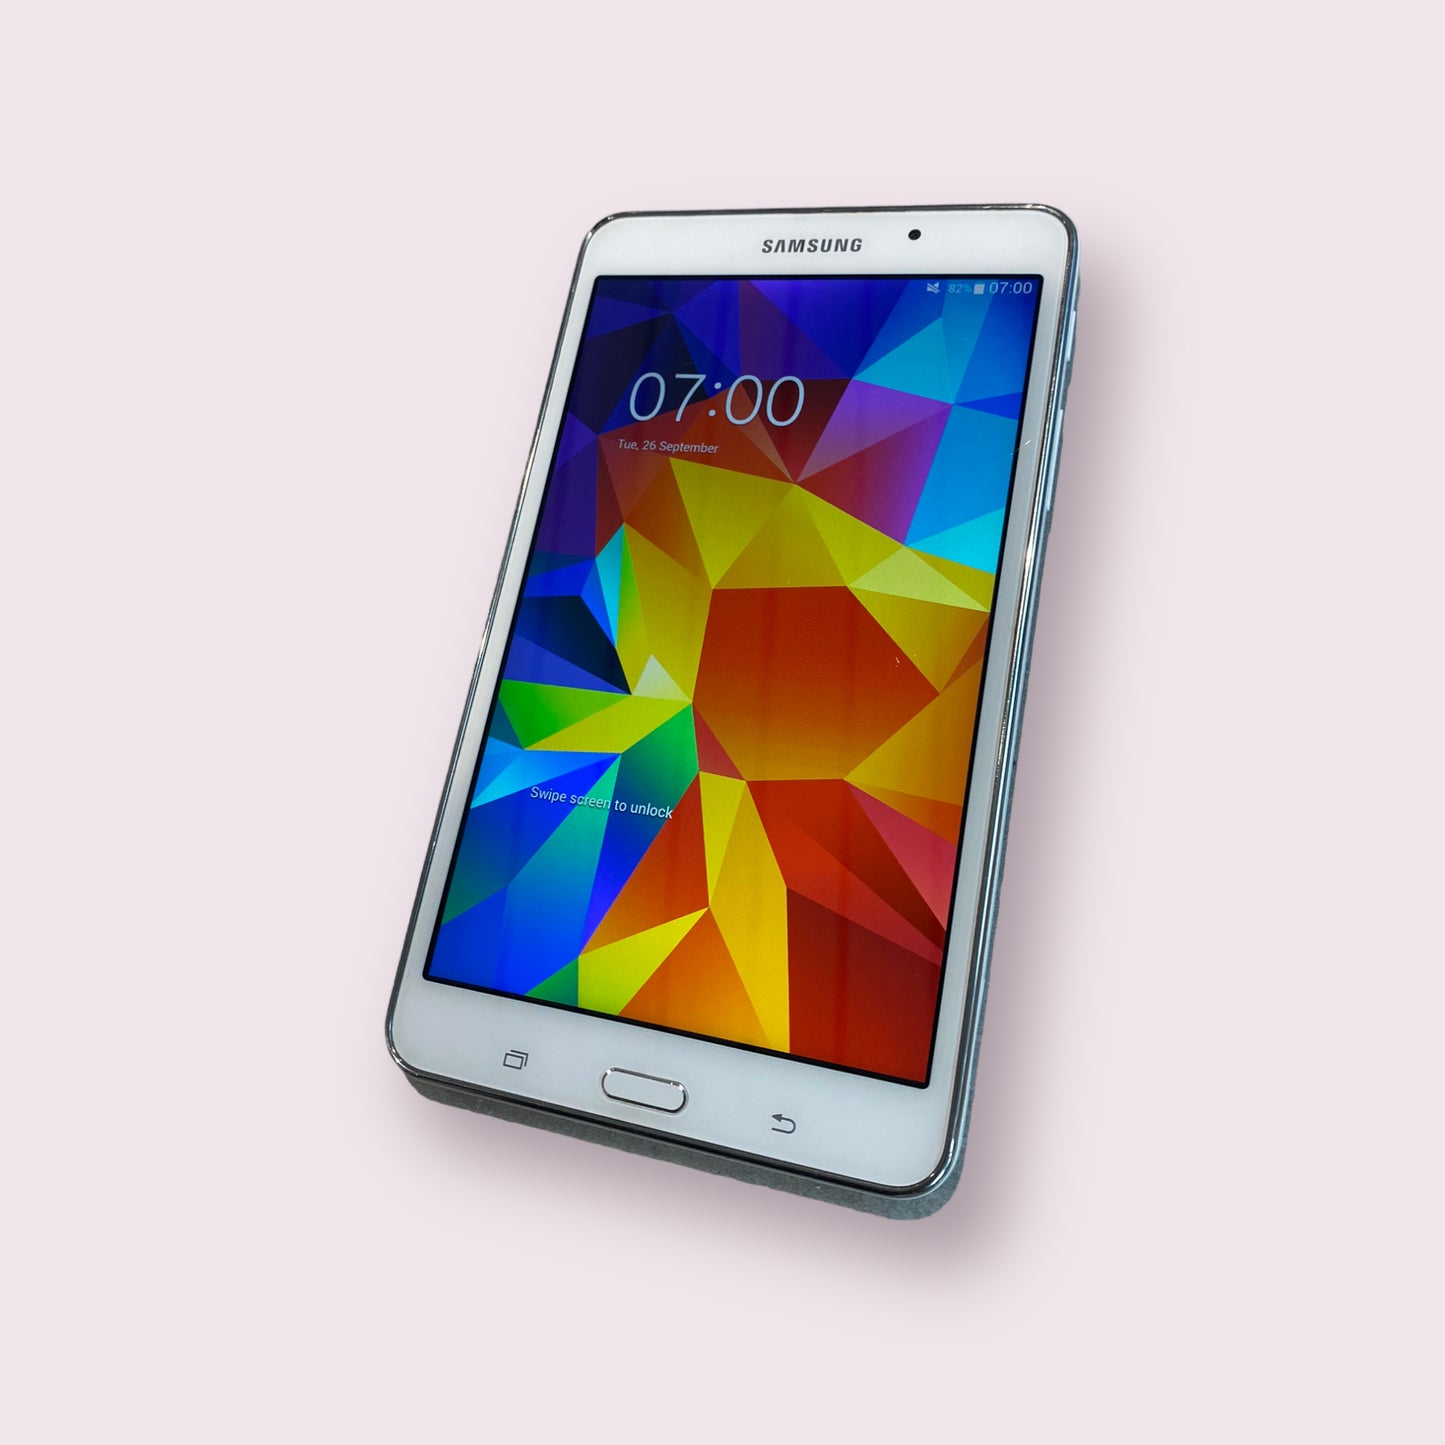 Samsung Galaxy TAB 4 7" 8GB SM-T230 2014 white Tablet - WIFI - Grade B